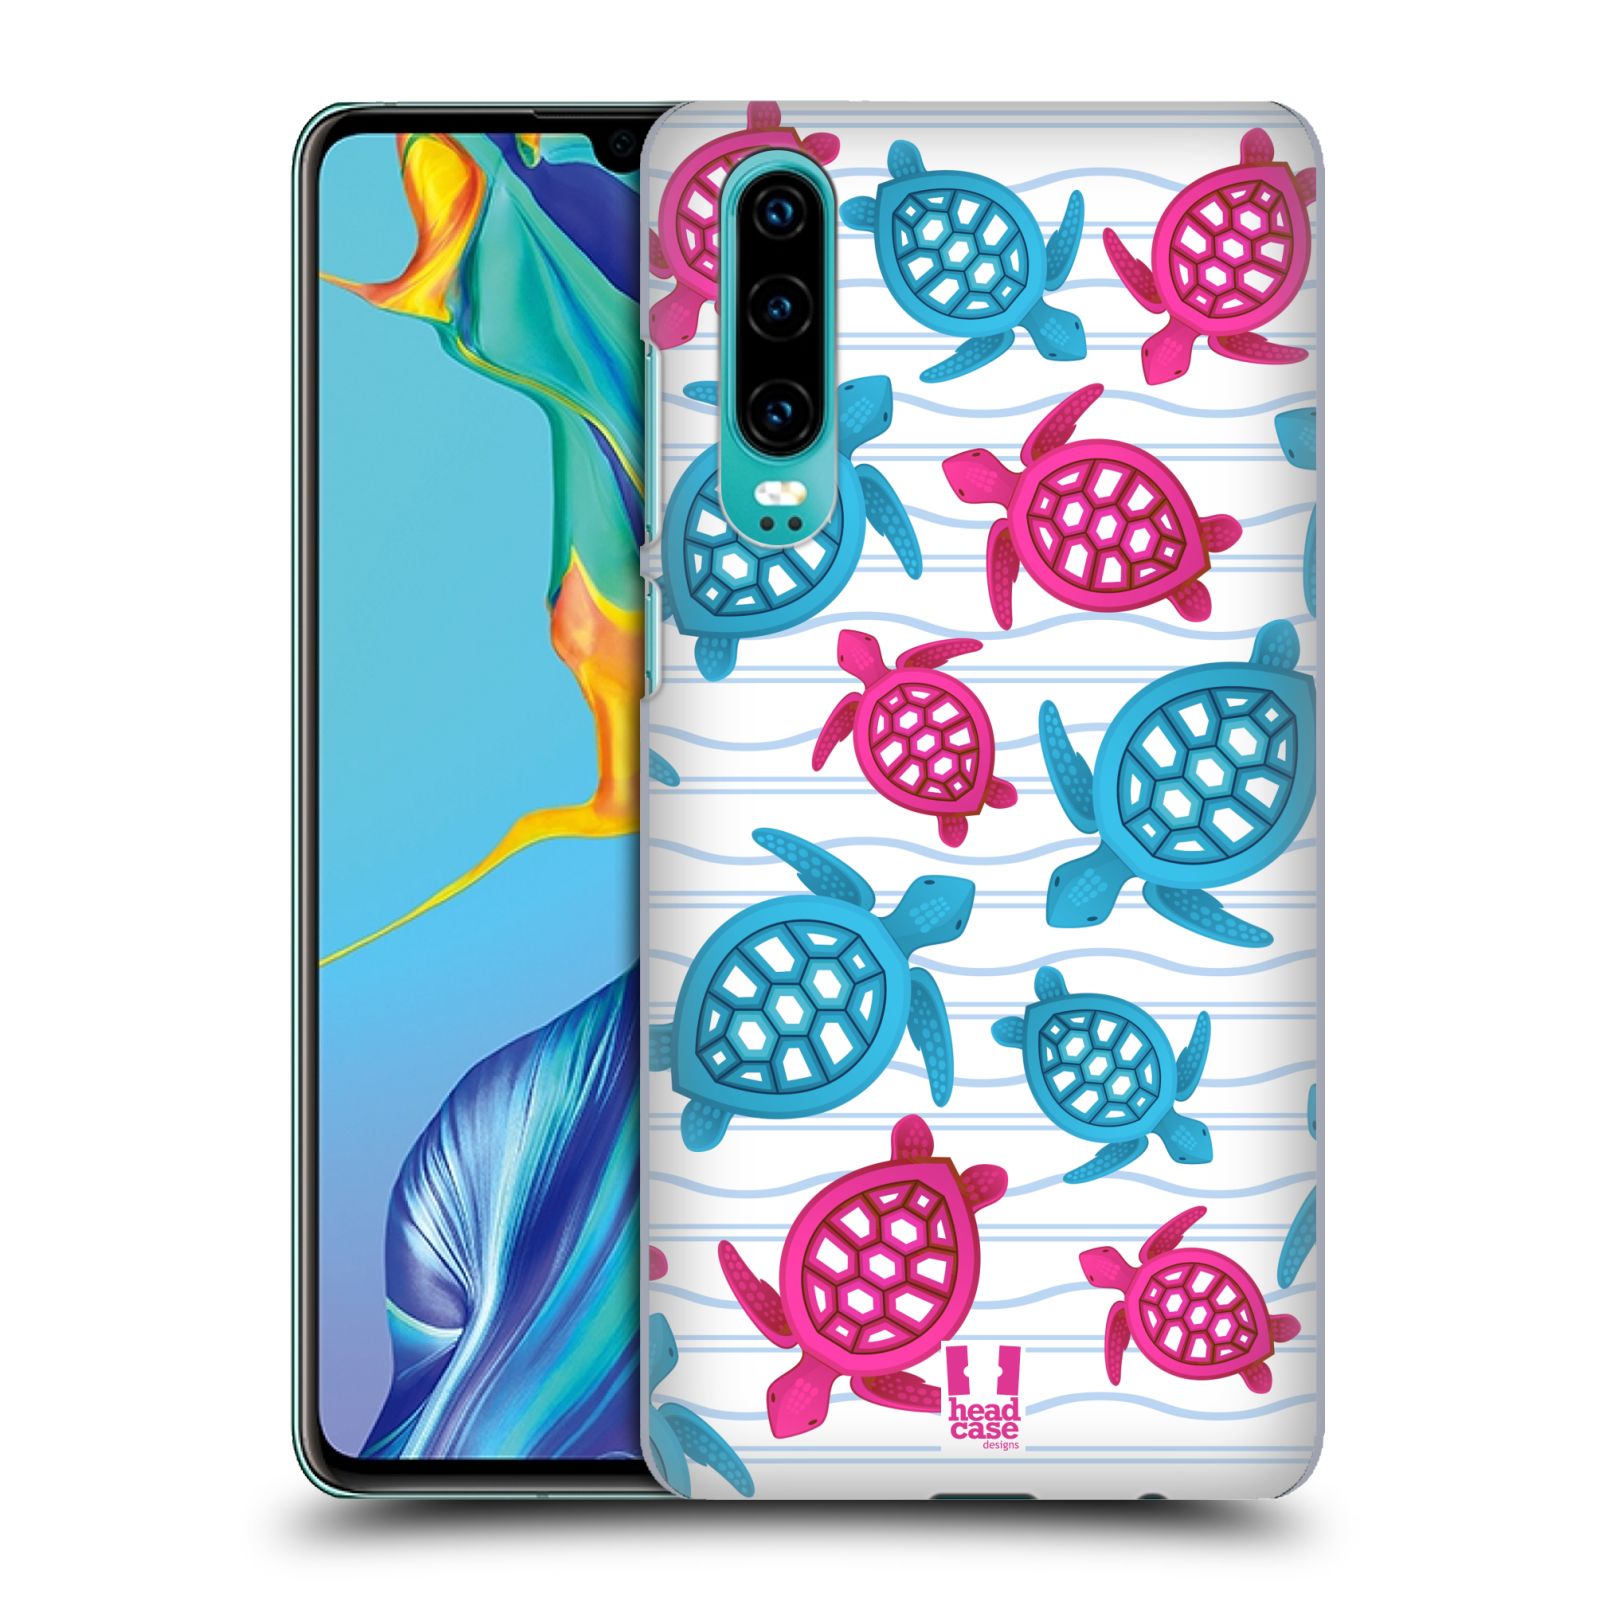 Zadní obal pro mobil Huawei P30 - HEAD CASE - kreslený mořský vzor želvičky